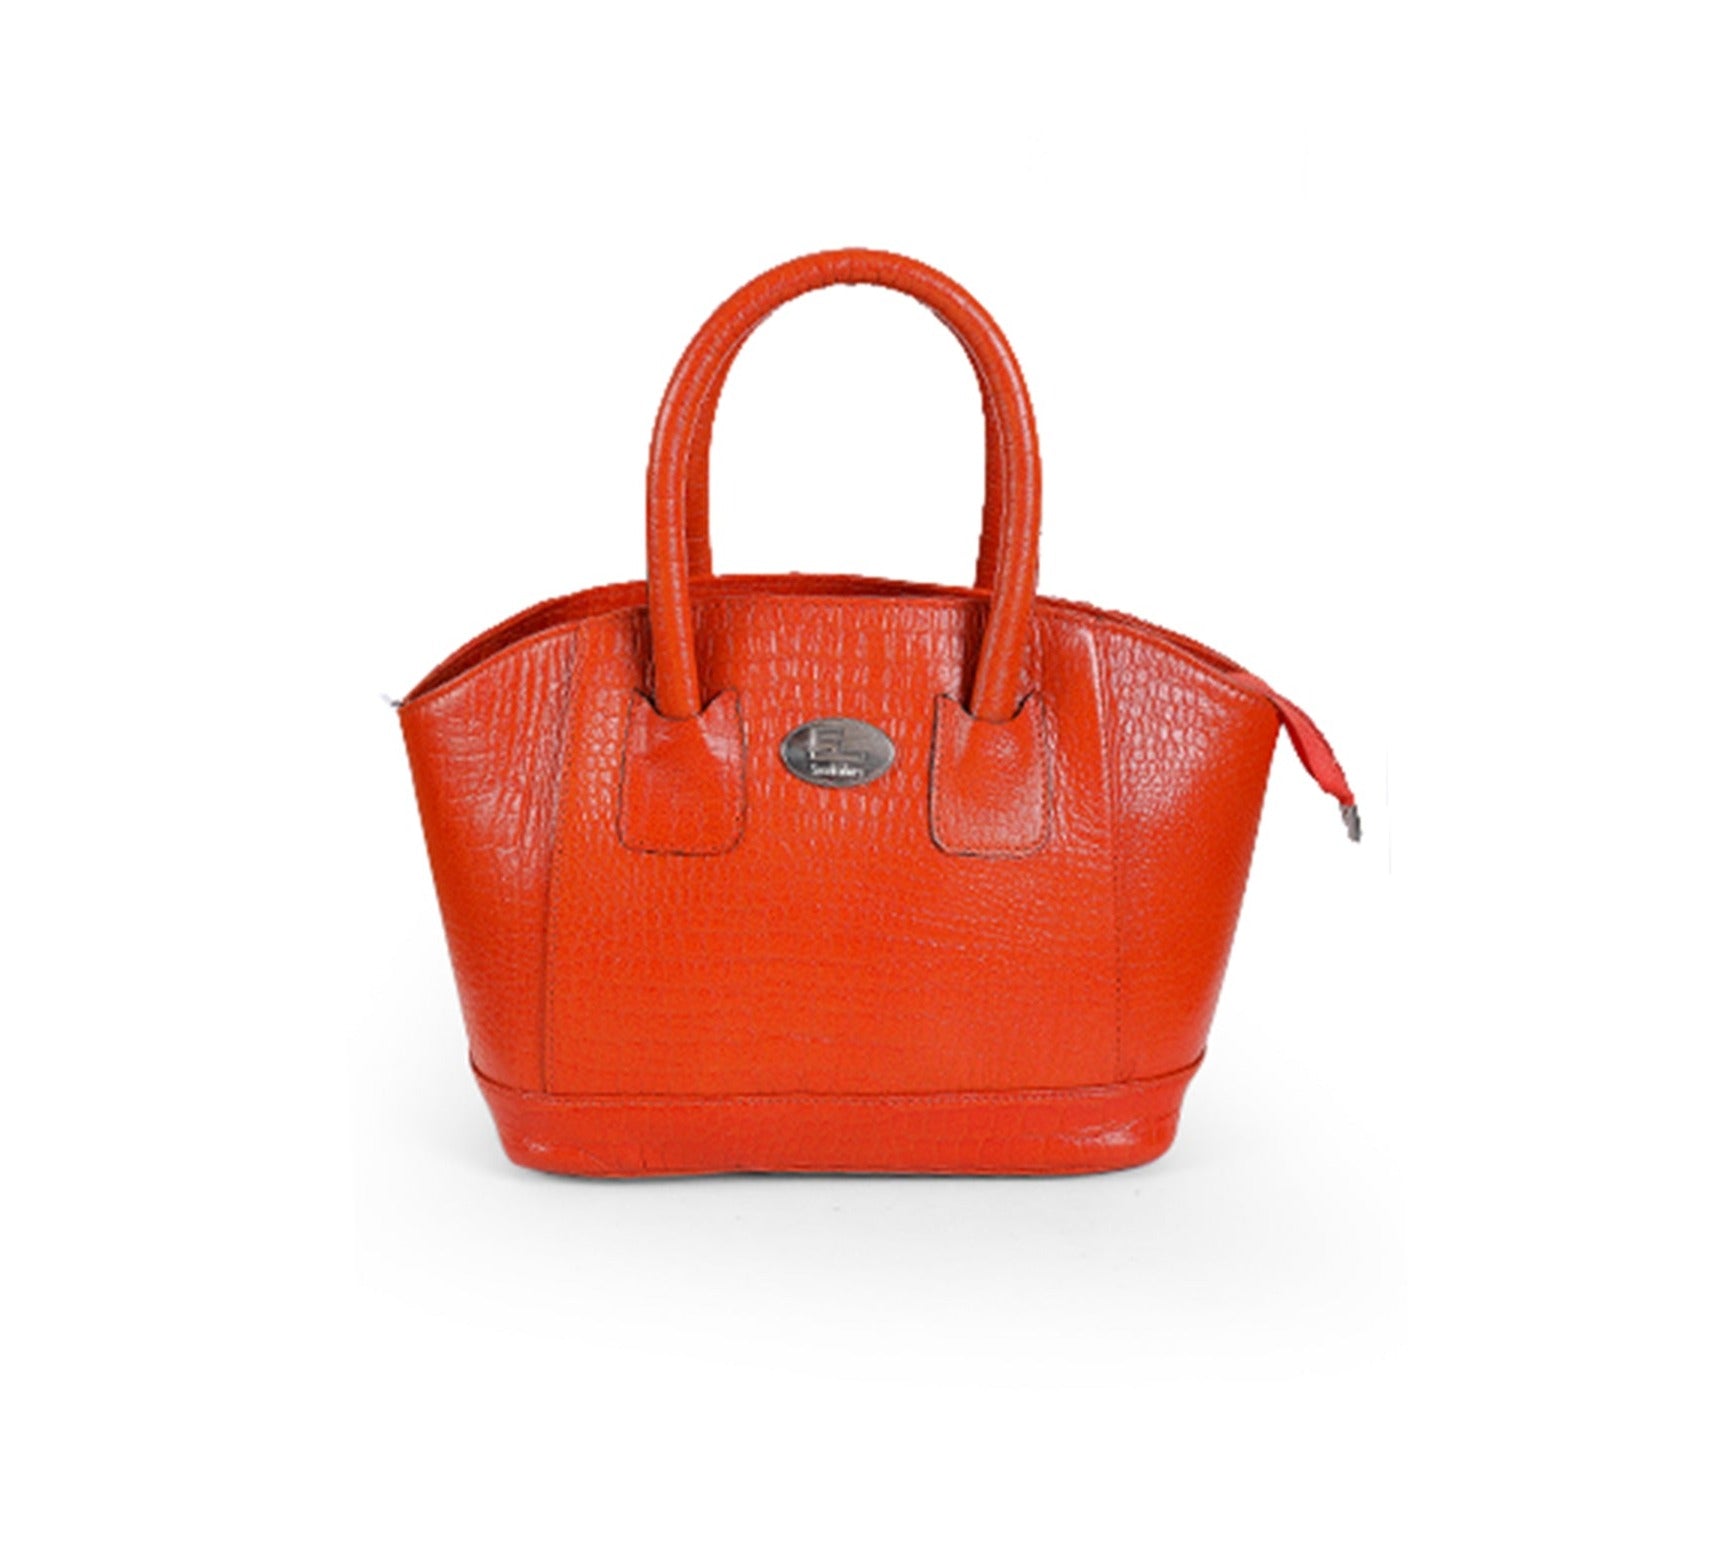 13350 Ladies Bag – Sreeleathers Ltd